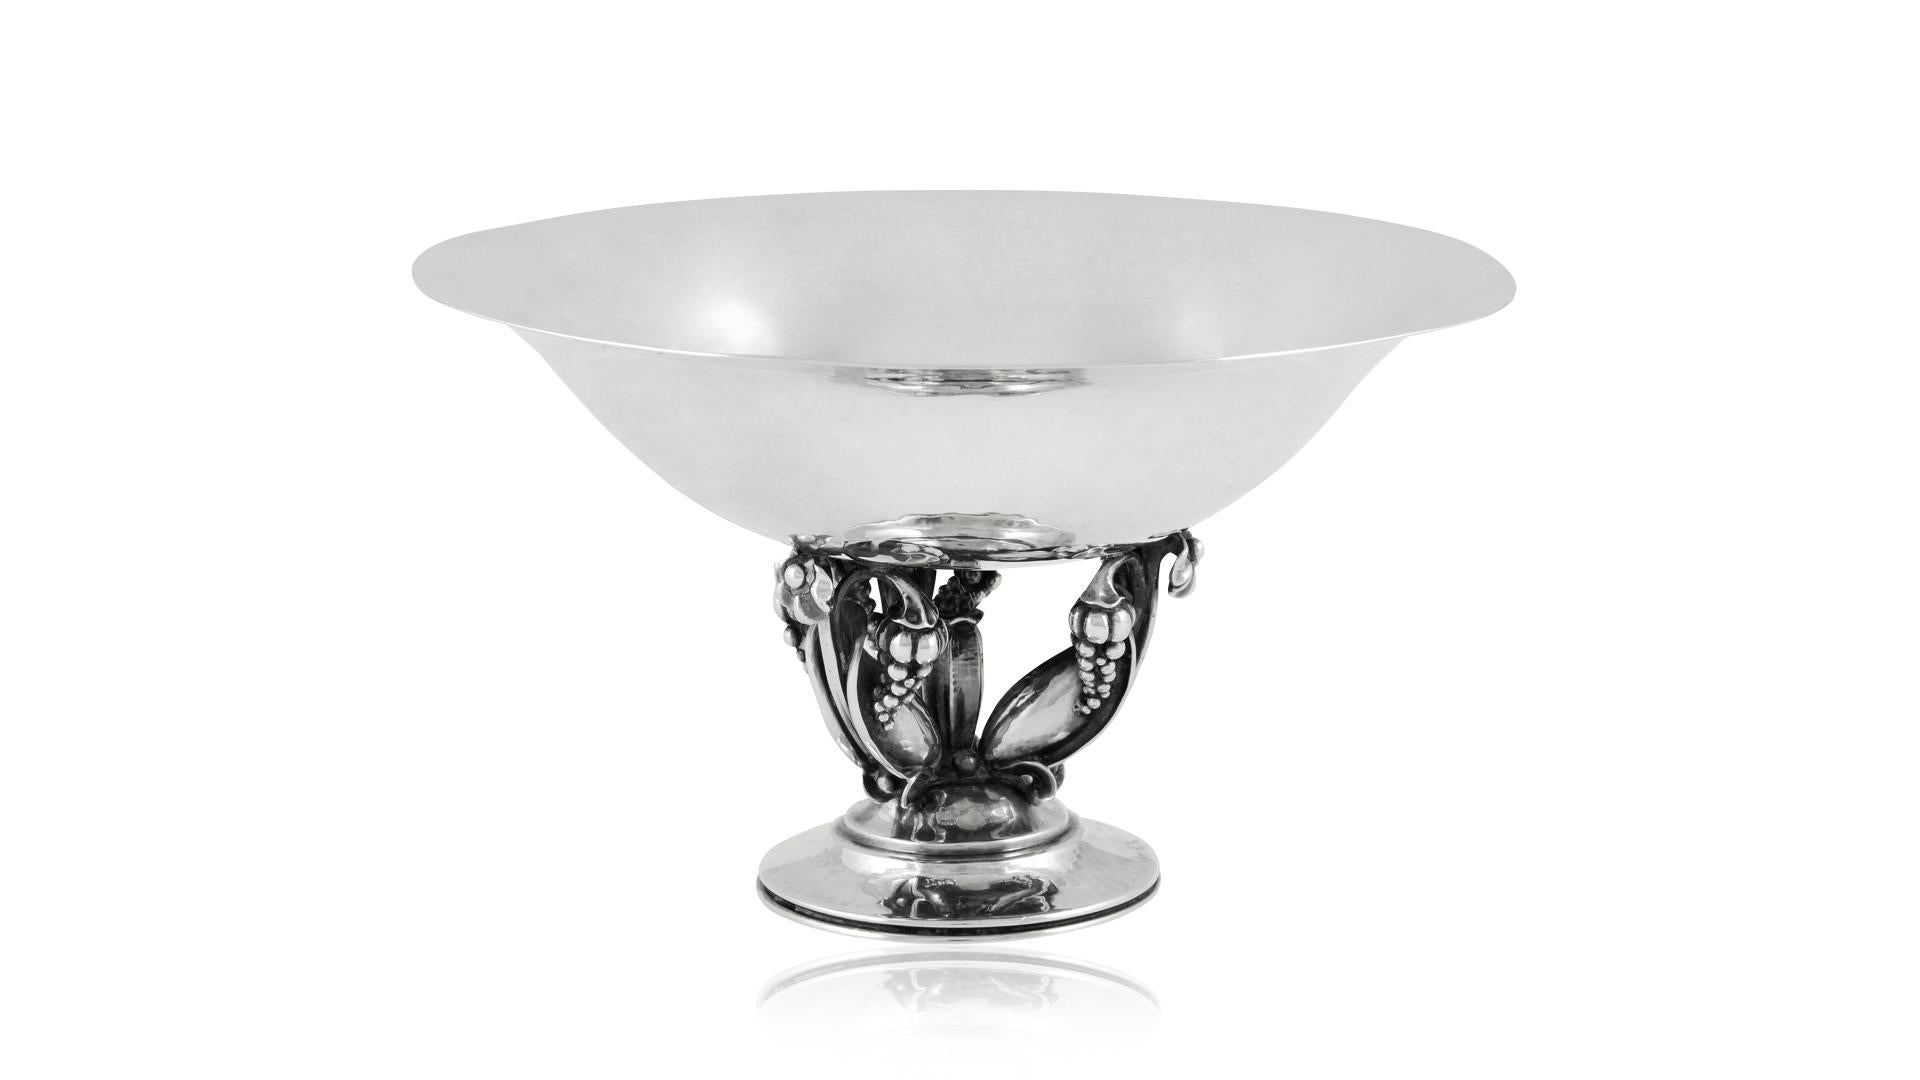 Eine dänische Vintage Sterling Silber Georg Jensen Schale # 468c, entworfen von Gundorph Albertus im Jahr 1926. Die Schale weist zarte Blumen- und Traubendetails auf, ein sehr organisch wirkendes Stück. Die Größe macht dieses Stück zu einer